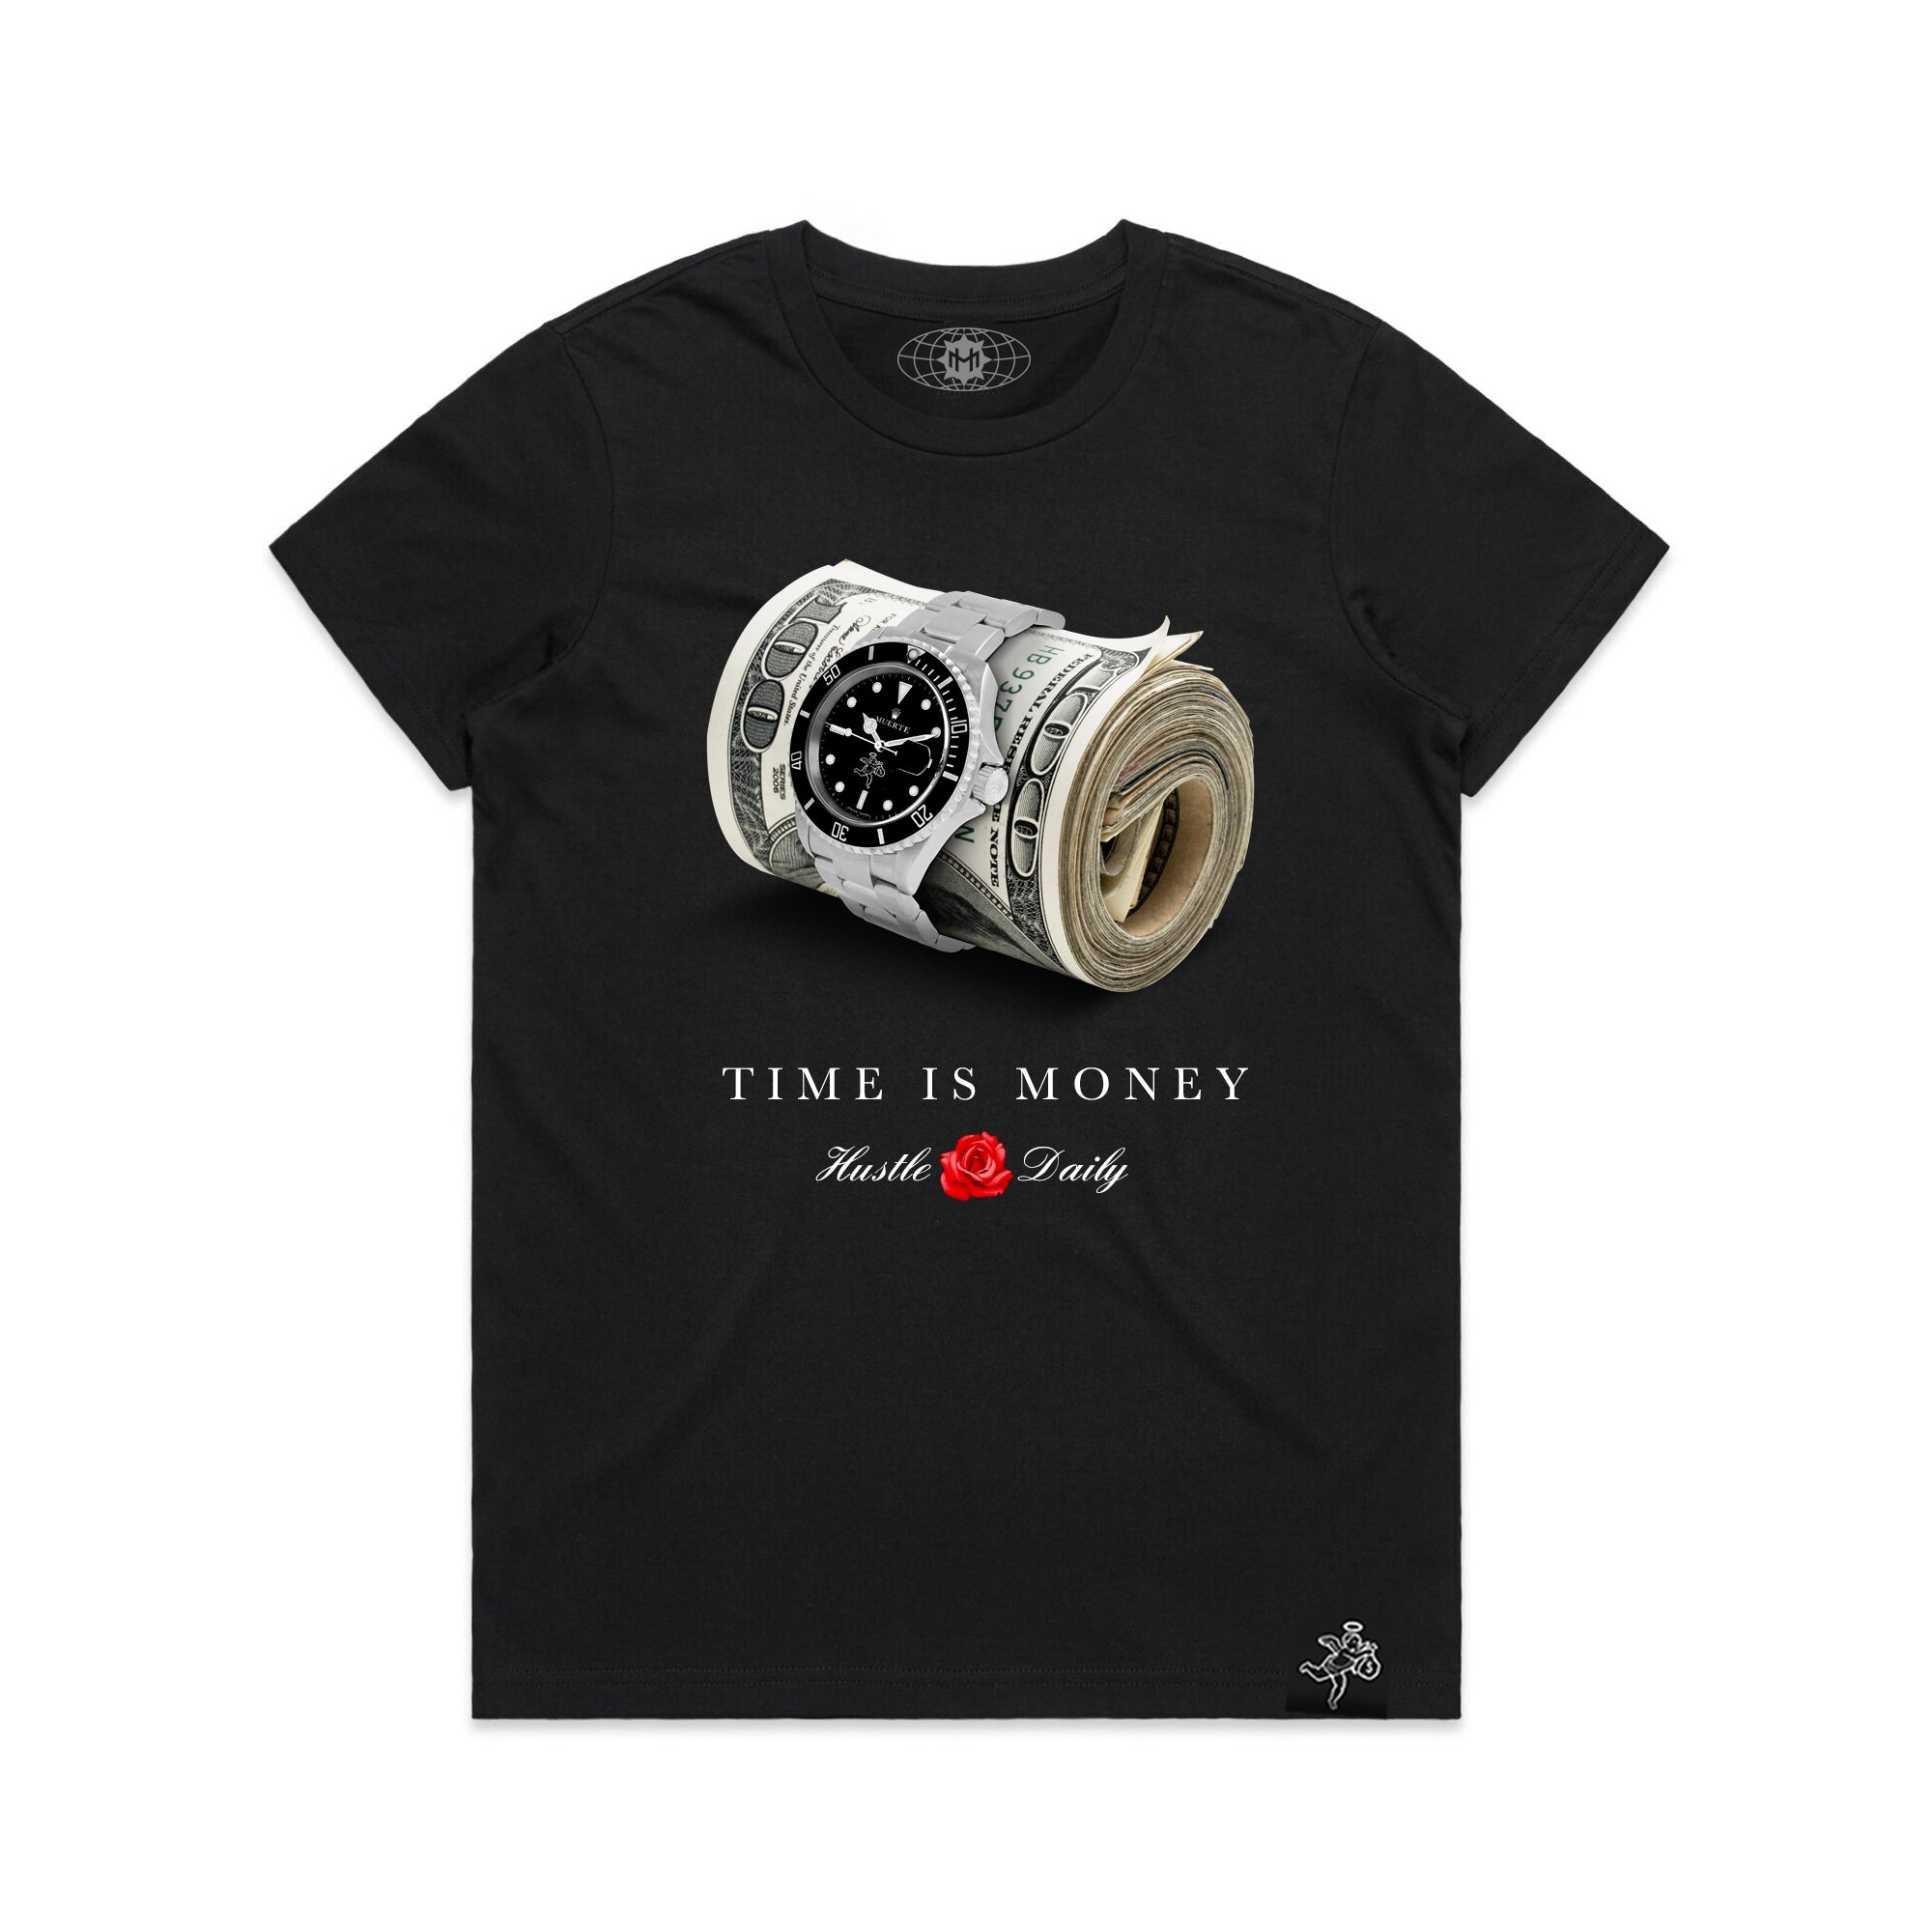 El tiempo es dinero - Camiseta de mujer